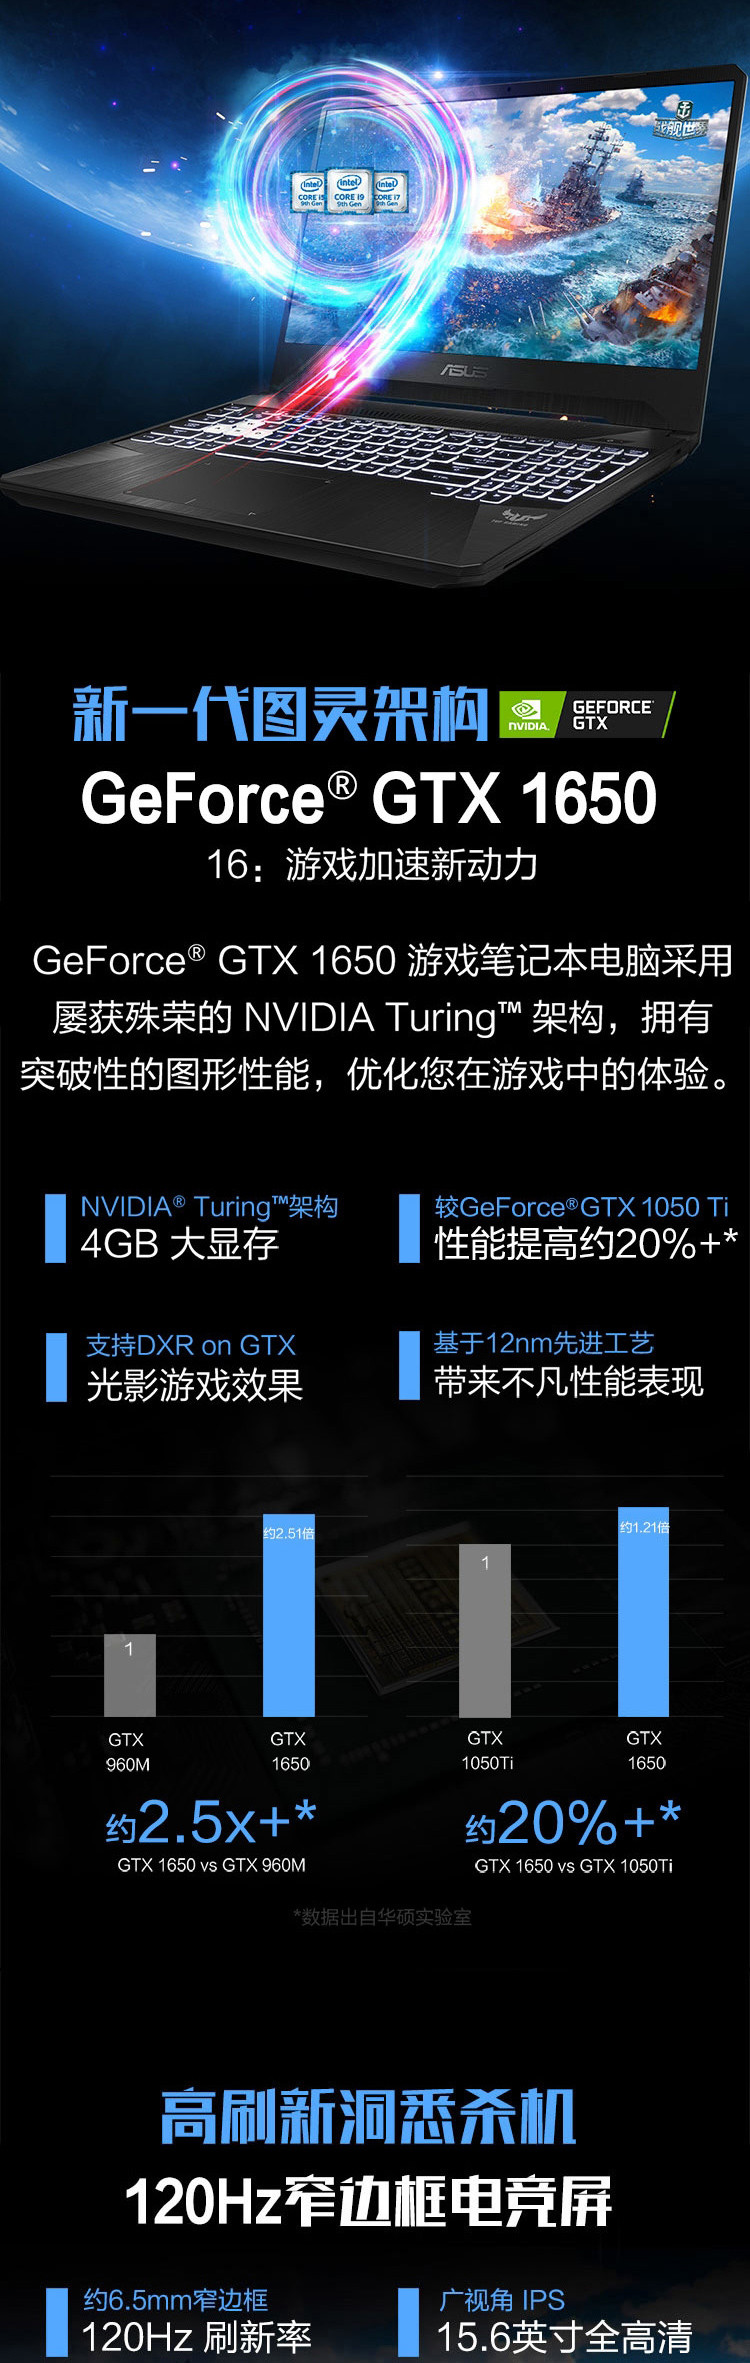 华硕 FX95GT9750 15.6英寸I7笔记本 1TB硬盘 8G内存 4G独显